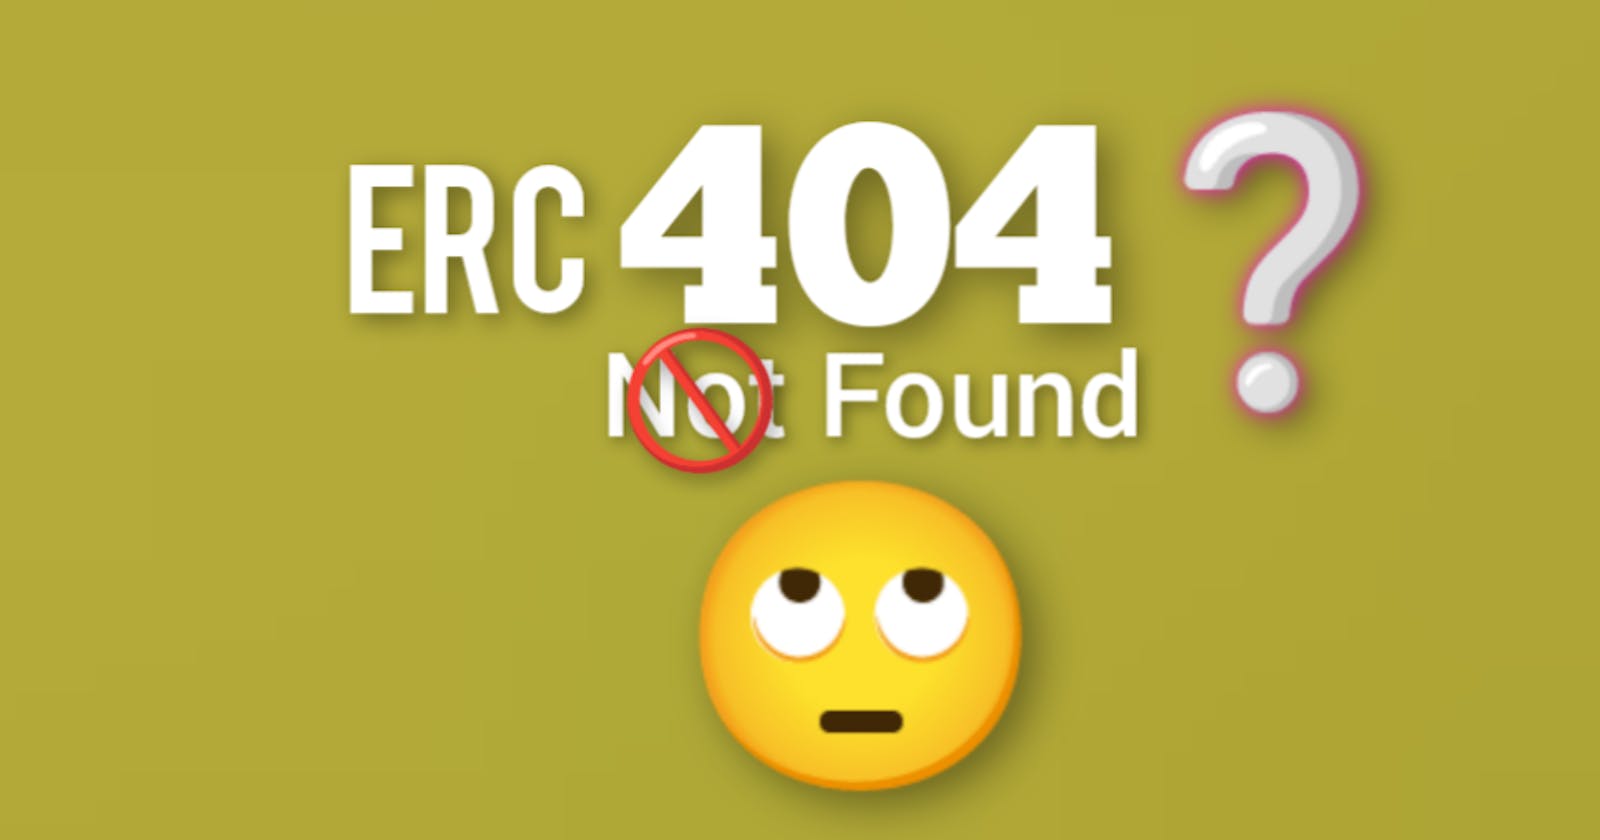 All About ERC-404 token standard